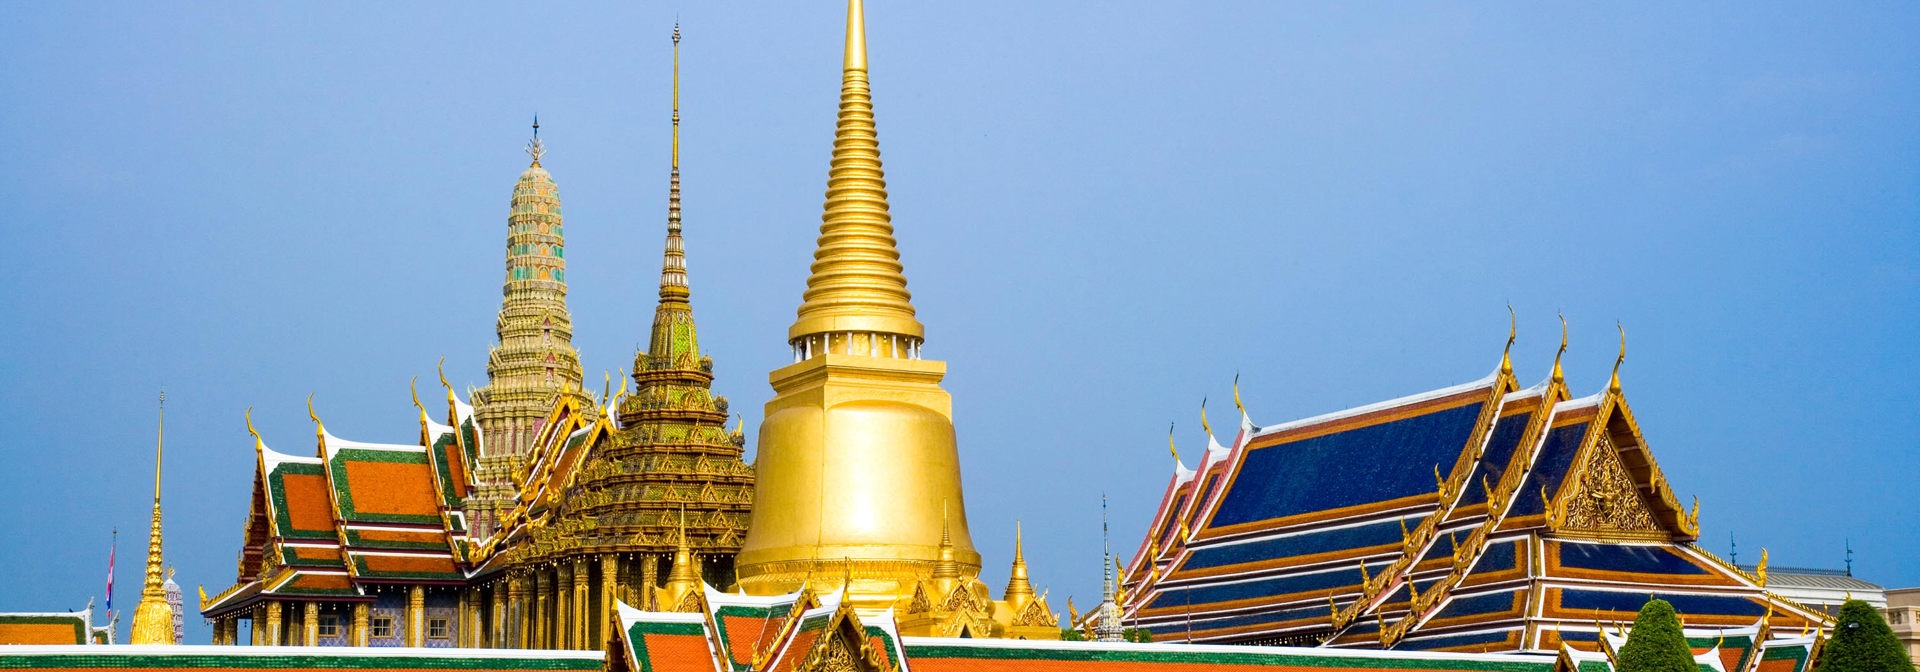 thailand - bangkok_grand palace_12